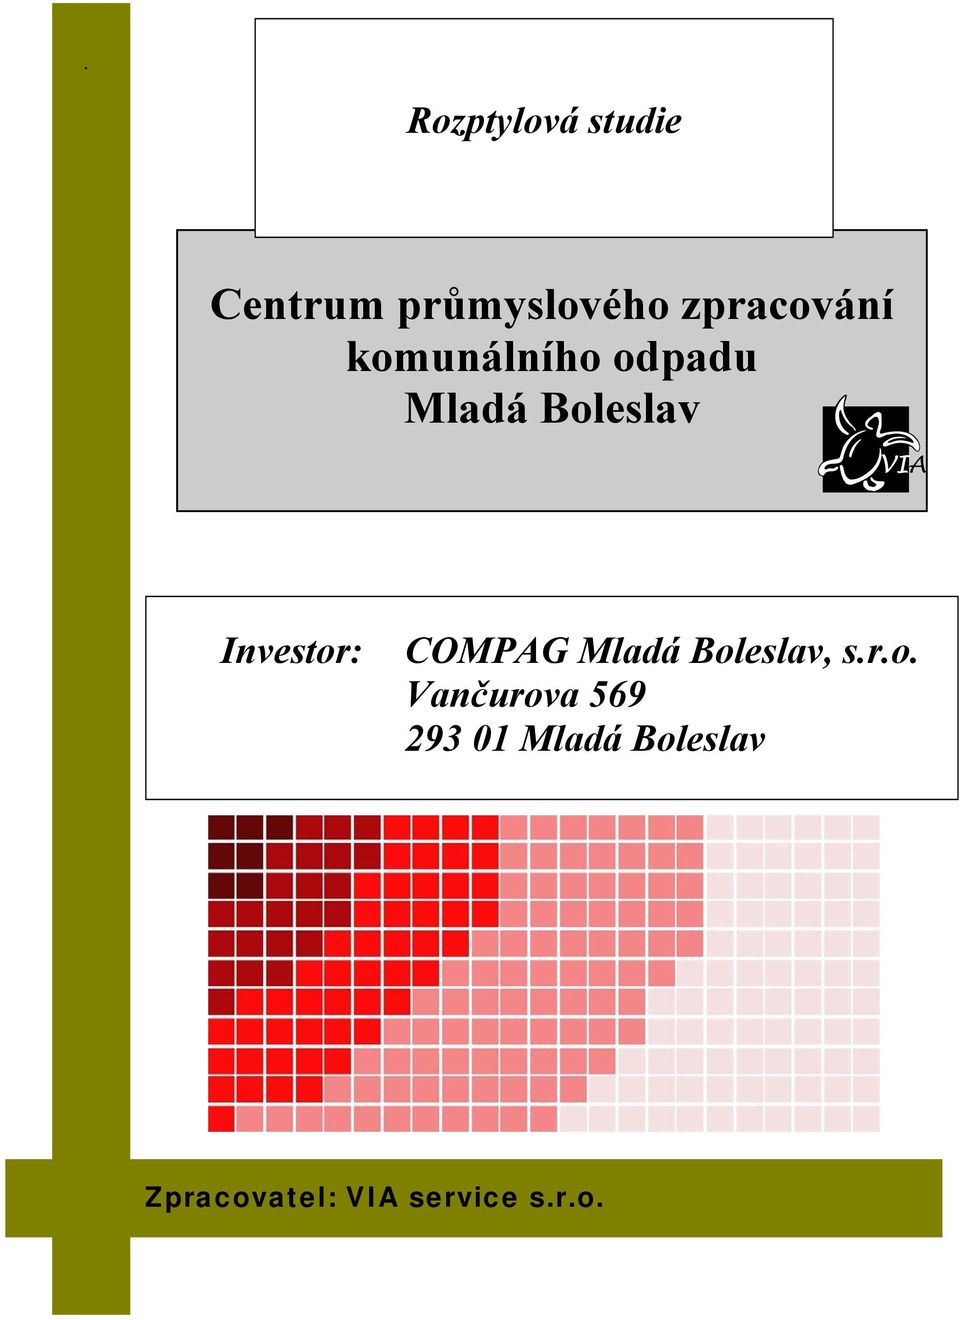 Boleslav Investor: COMPAG Mladá Boleslav, s.